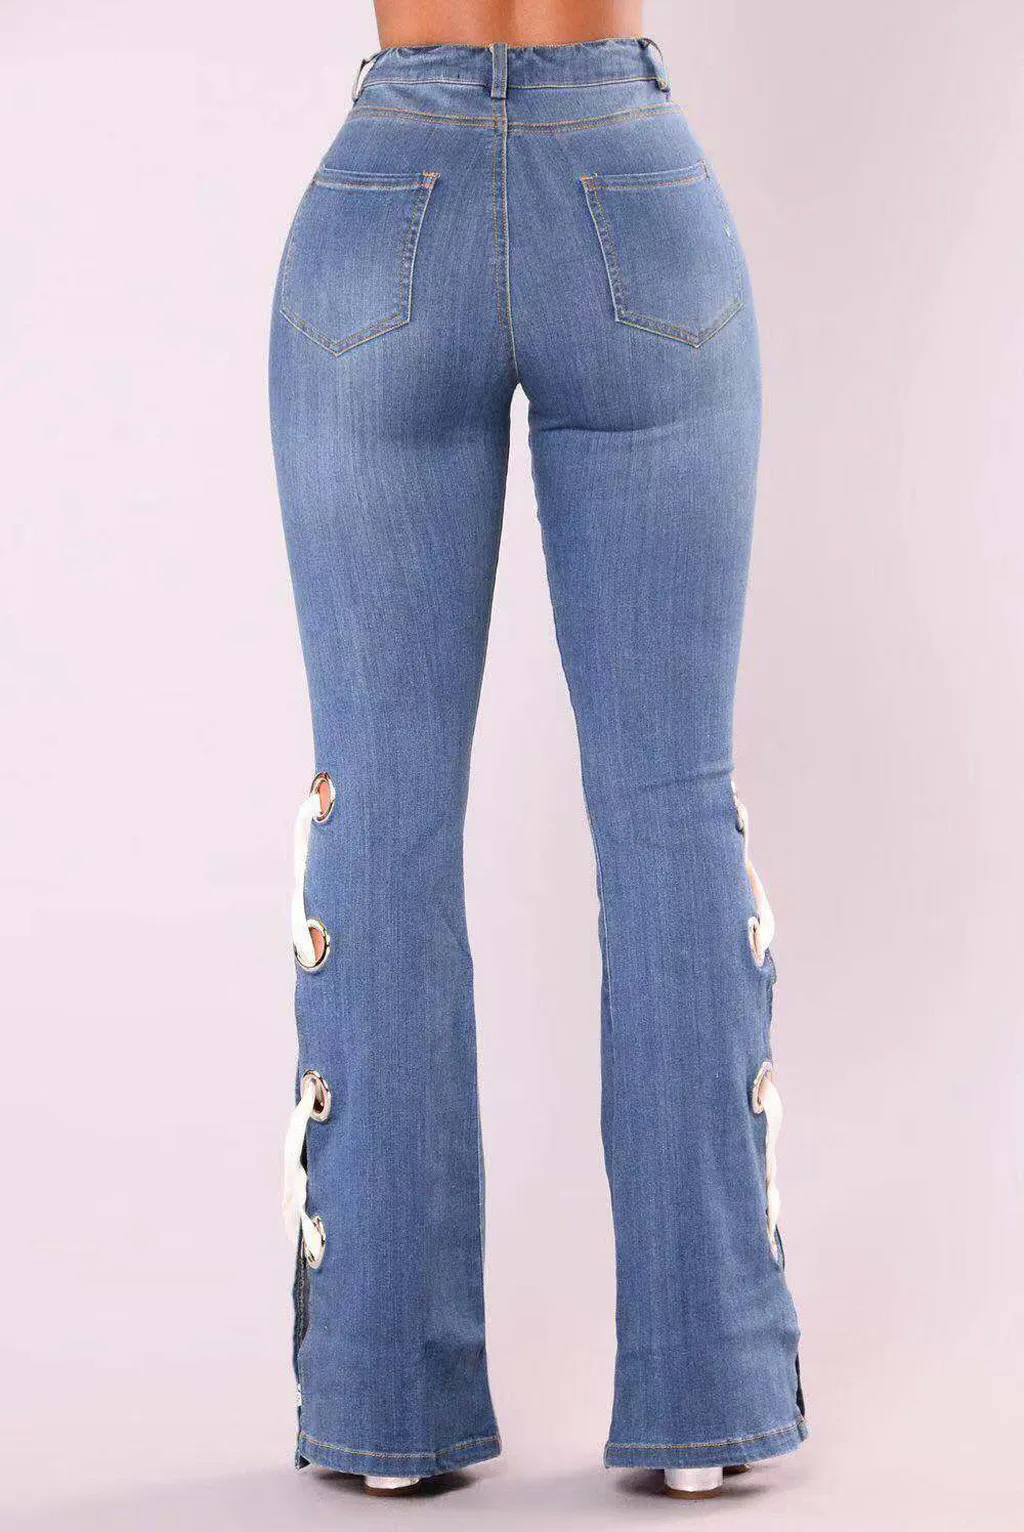 Женские винтажные расклешенные джинсы на шнуровке с бантом, обтягивающие Широкие джинсовые штаны, повседневные кружевные брюки, Pantalon mujer#3s